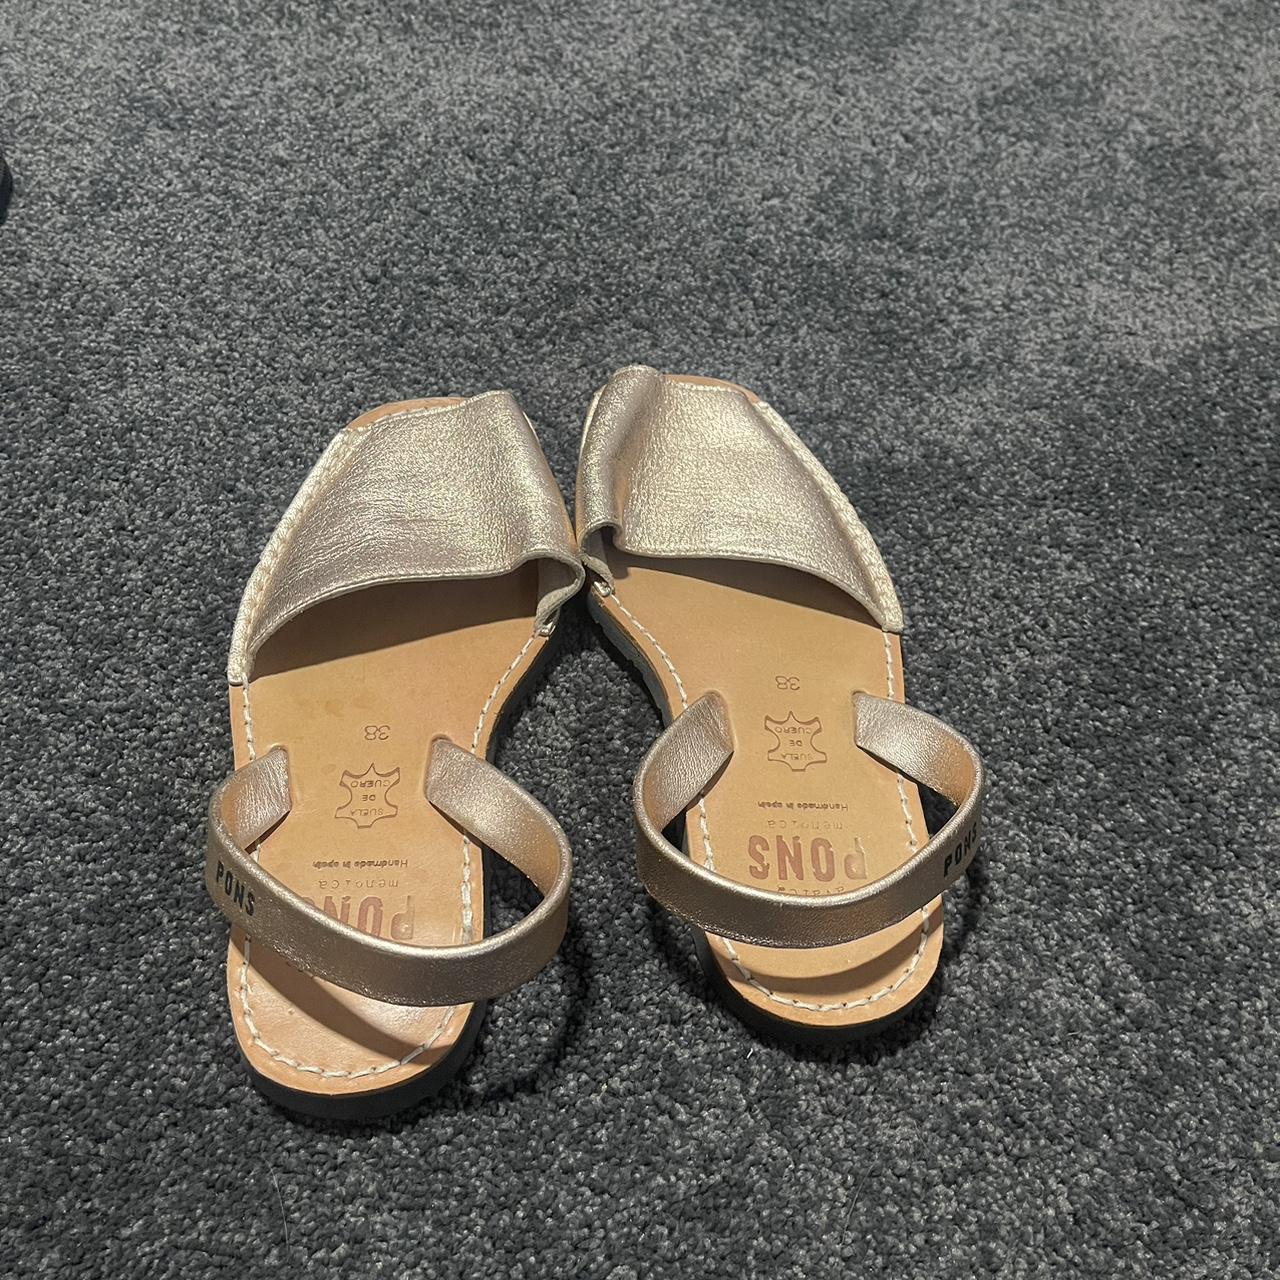 Rose gold pons sandals size 38 - Depop